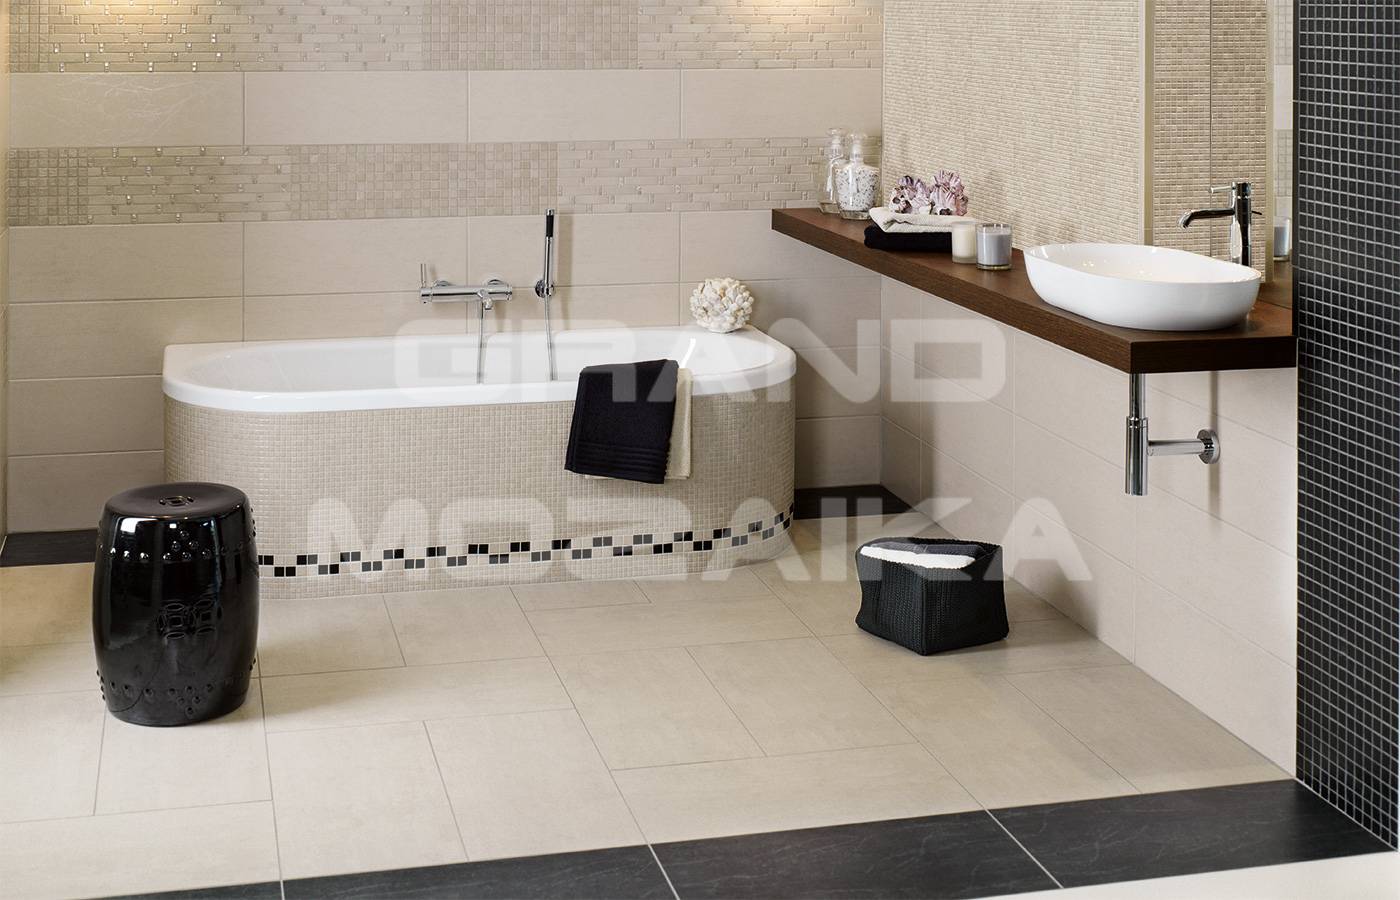 Матовая плитка для ванной комнаты ( керамическая ) - особенности, достоинства и недостатки в сравнении с глянцевой